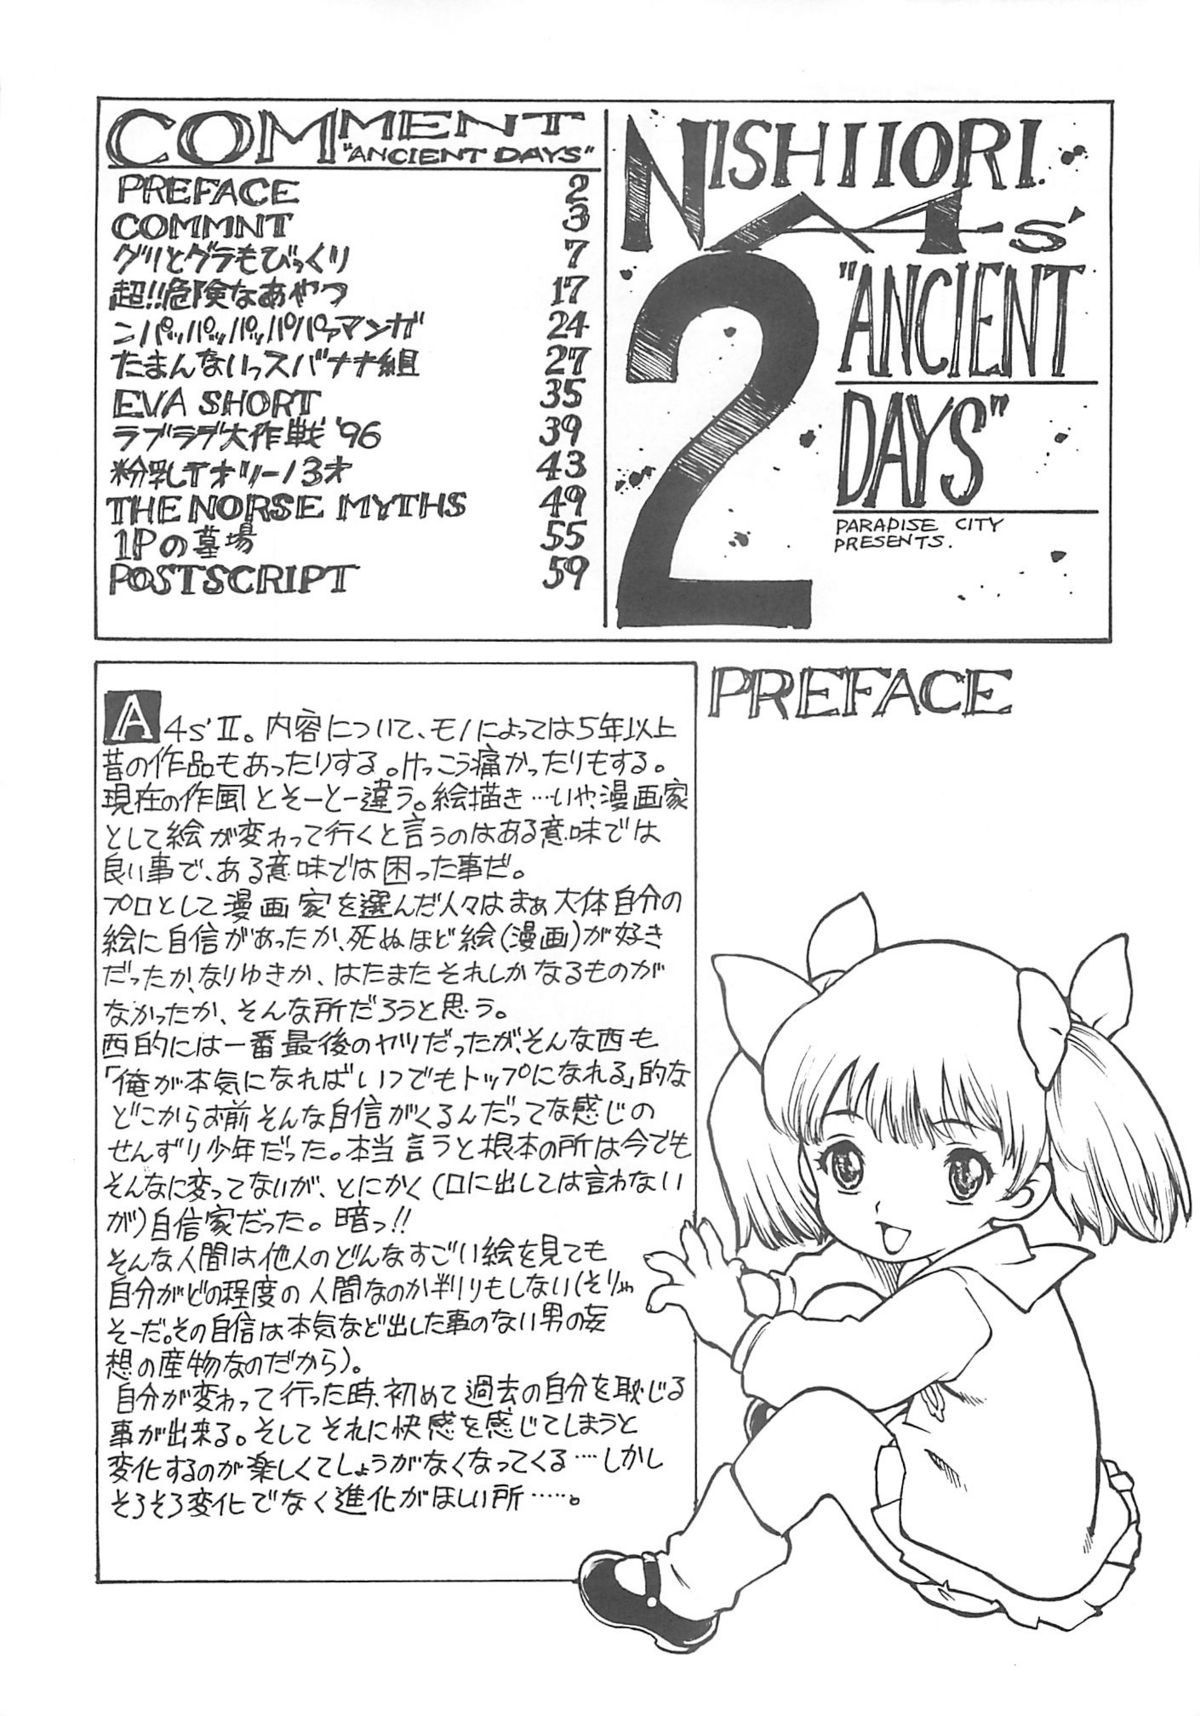 [ぱらだいすCity (西安)] NISHI IORI A4s'2 ”ANCIENT DAYS” (よろず)